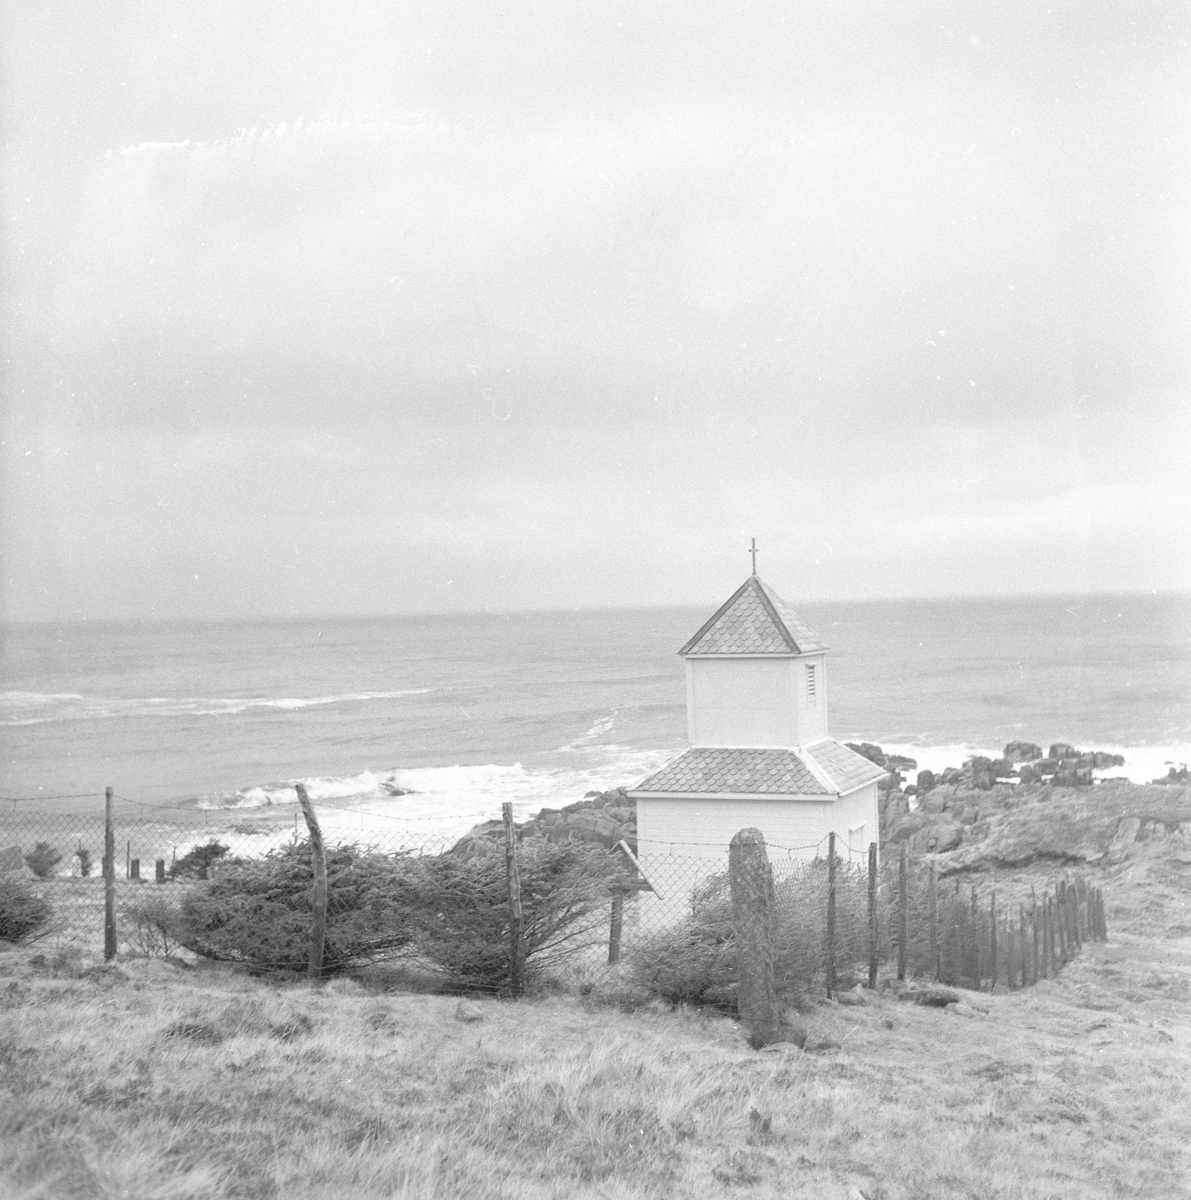 Pigghåfiske på Shetland.
Shetland, 14-22. mai 1958,kirken og landskapet rundt.